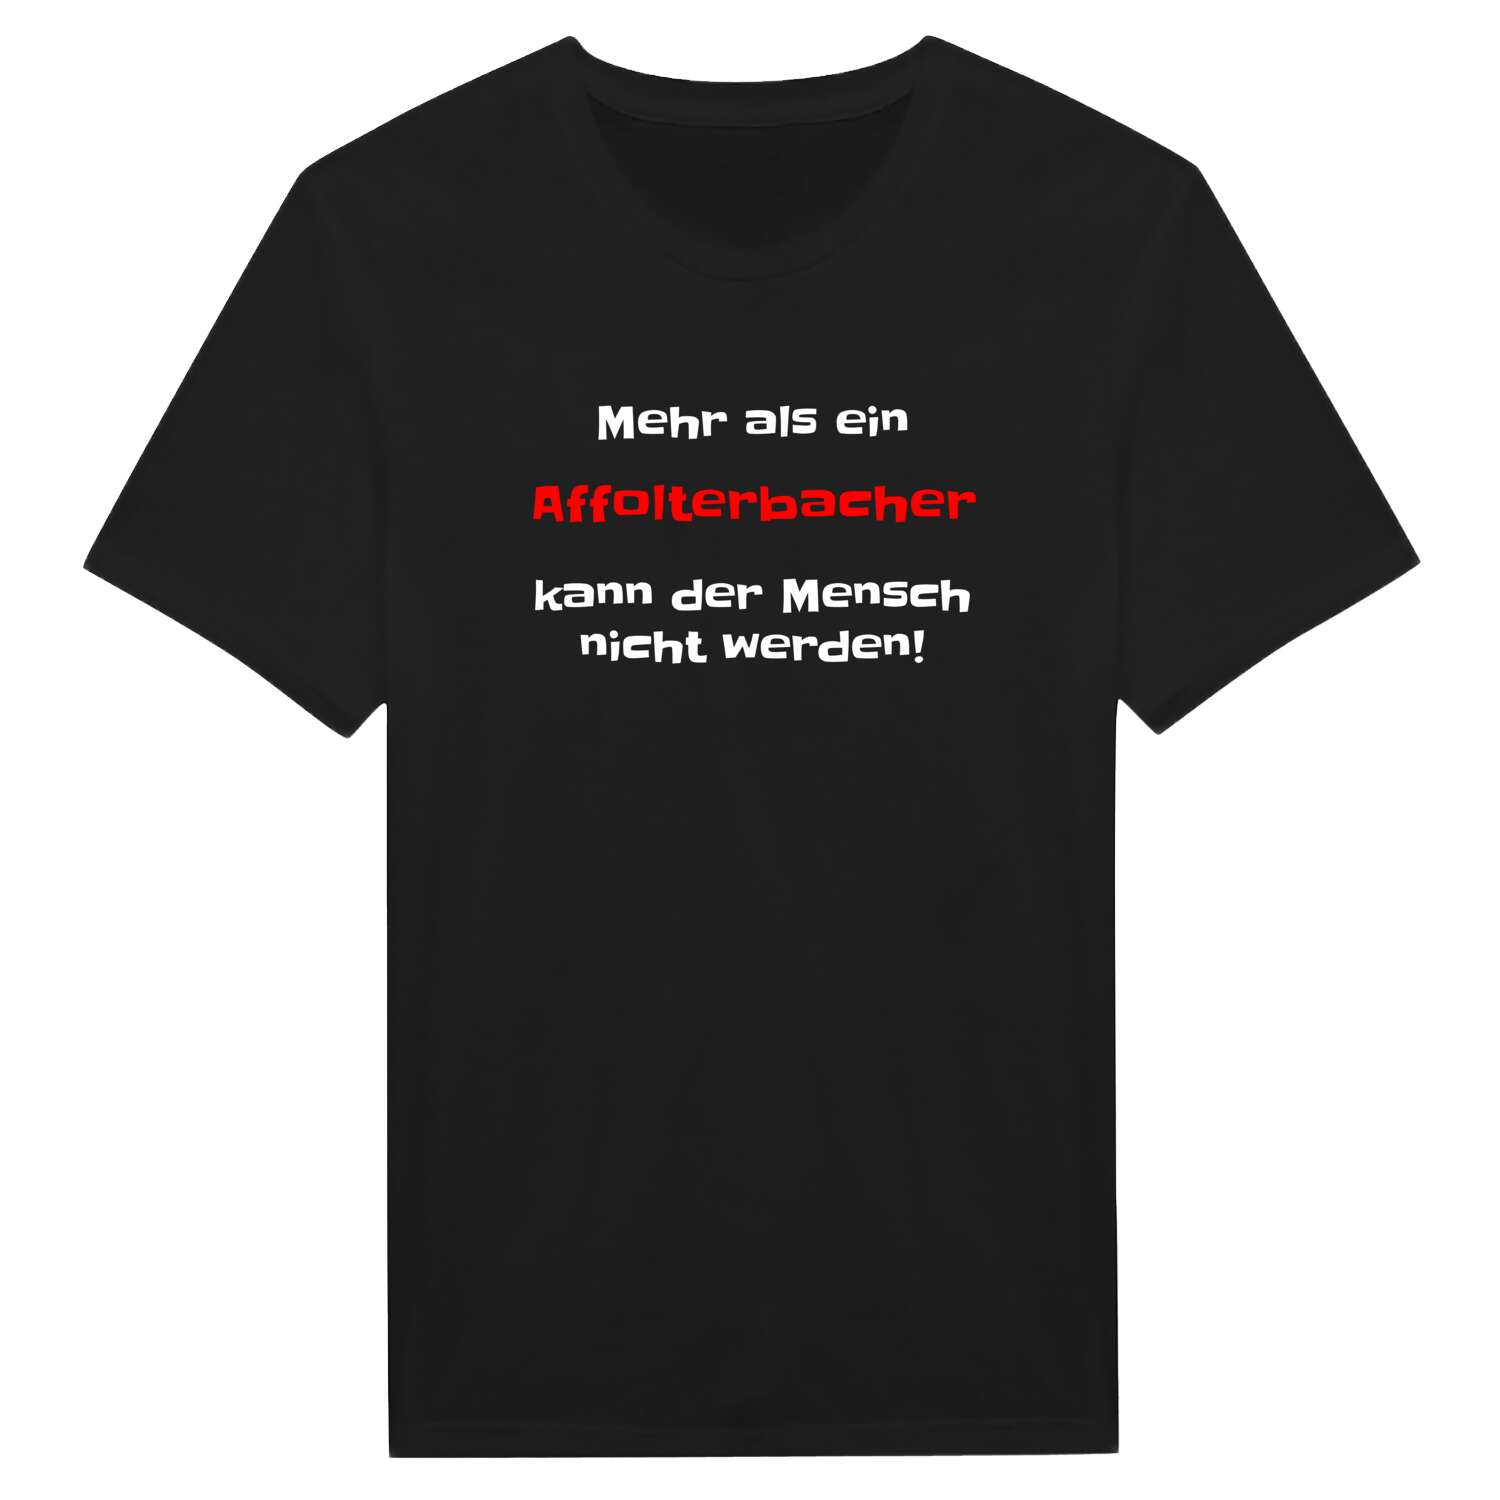 Affolterbach T-Shirt »Mehr als ein«